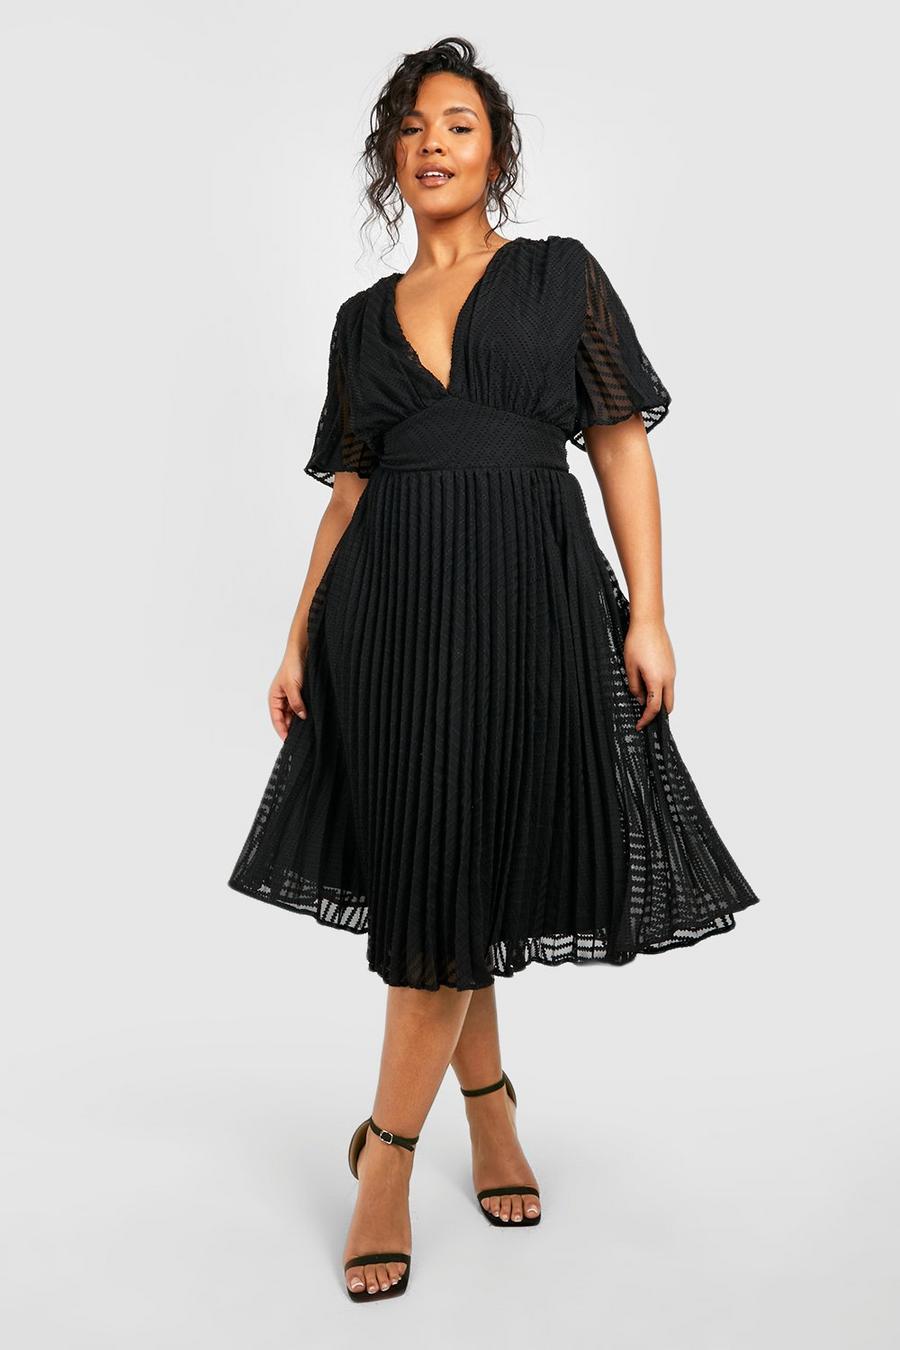 Black שמלת סקייטר מידי שיפון עם טקסטורה למידות גדולות